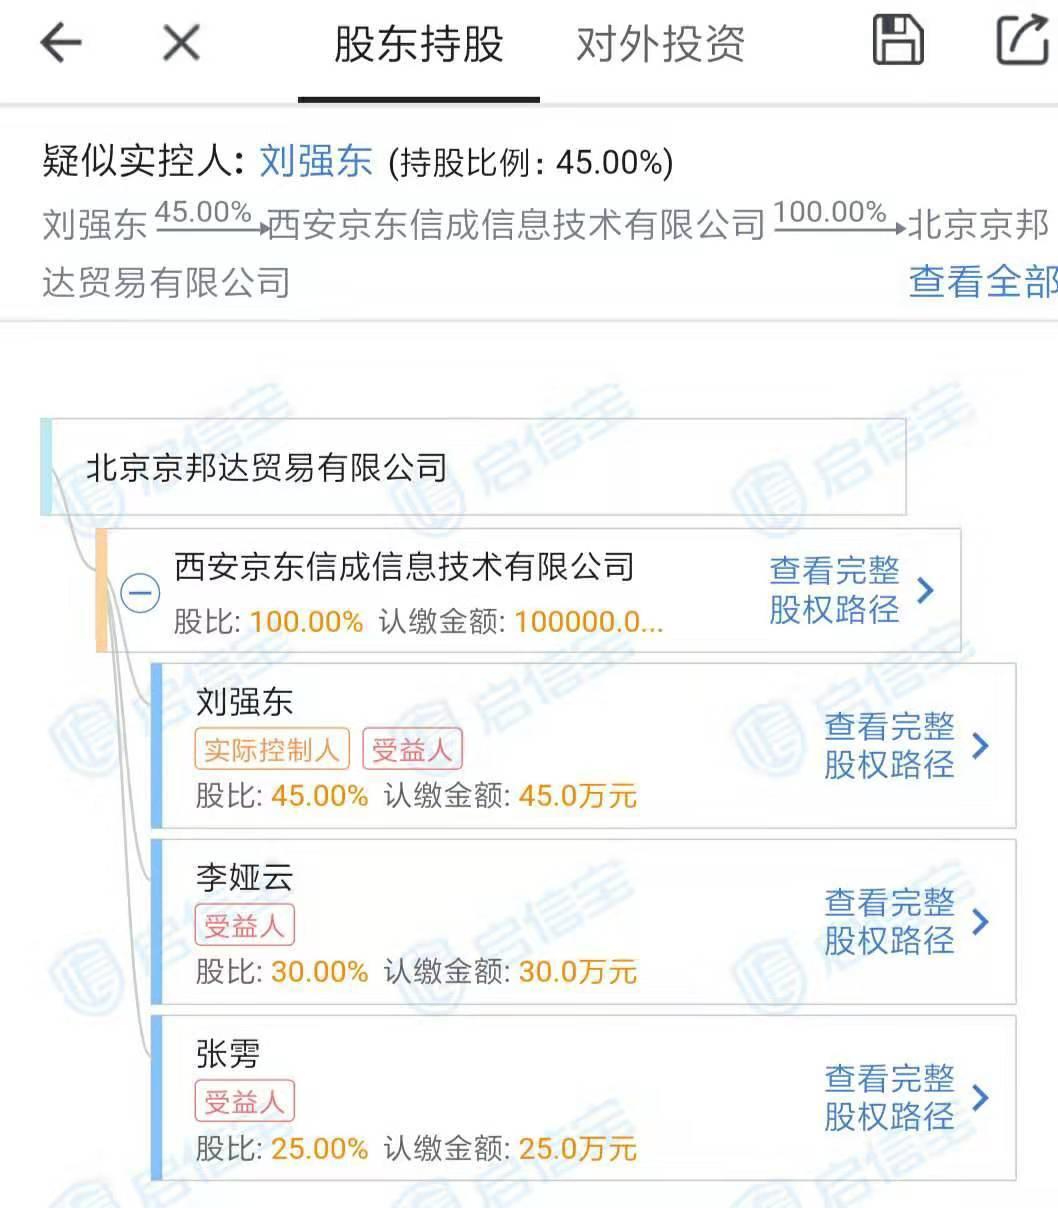 启信宝截图消息显示,刘强东近期卸任多家京东旗下公司高管,包括:京东